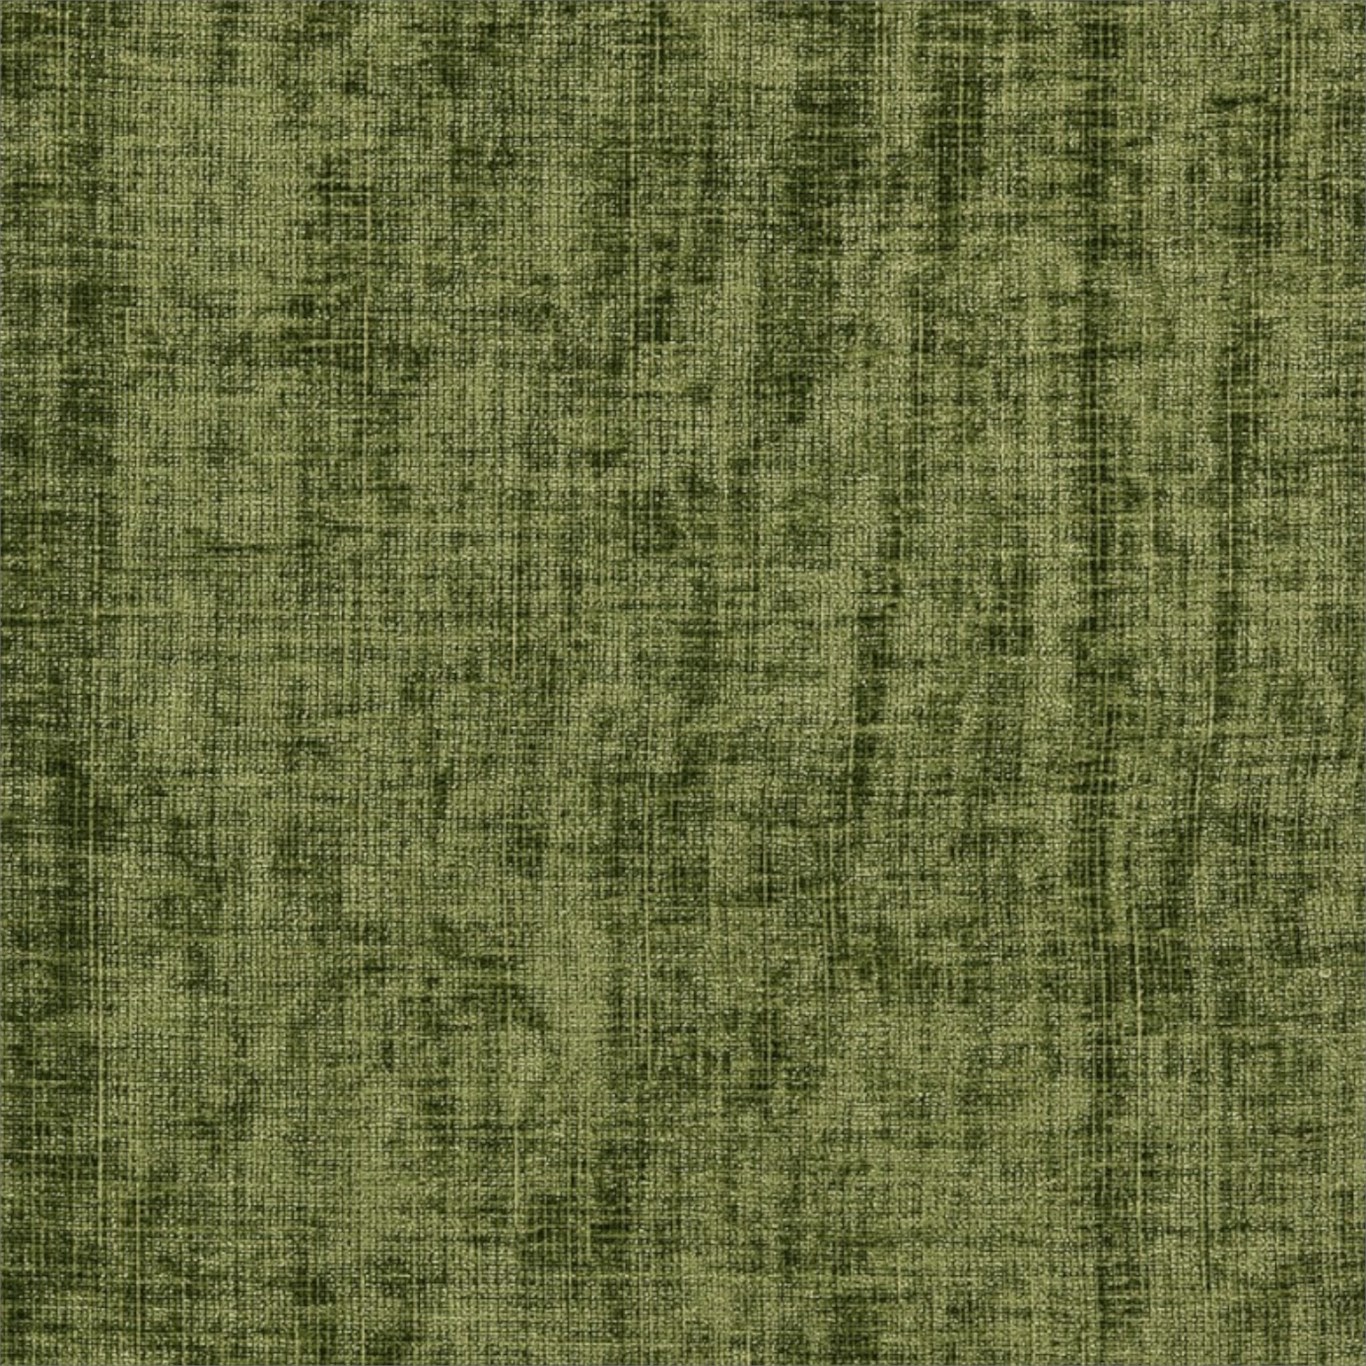 Материал хаки. Ткань Sanderson 237042. Ткань болотного цвета. Ткань хаки. Текстура ткани болотного цвета.